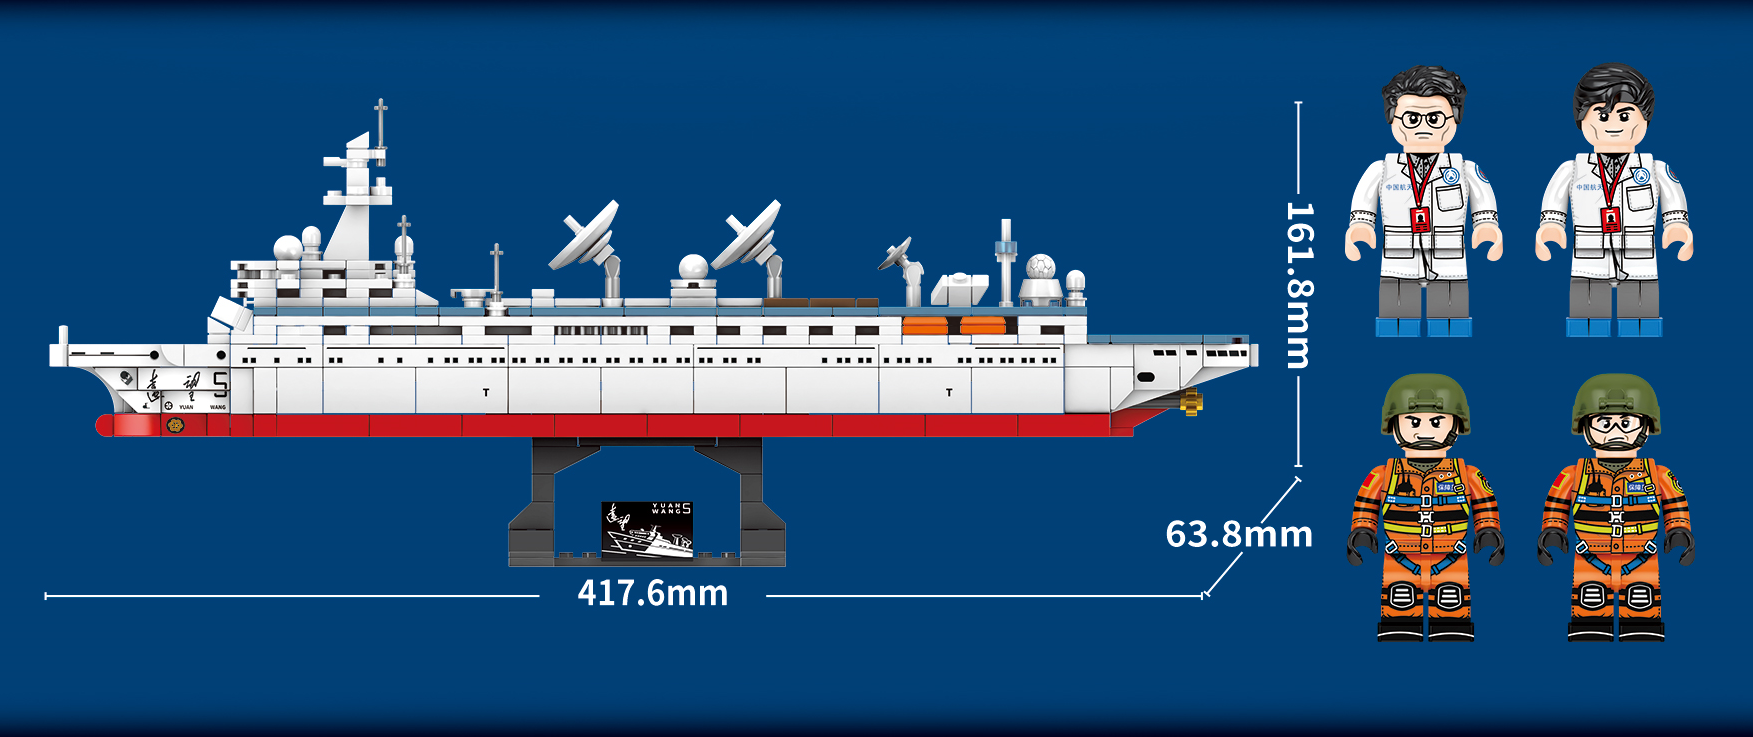 Đồ Chơi Lắp Ráp, Xếp Hình Thông Minh Cho Bé Trai Tàu Radar Hải Quân - SEMBO 203319